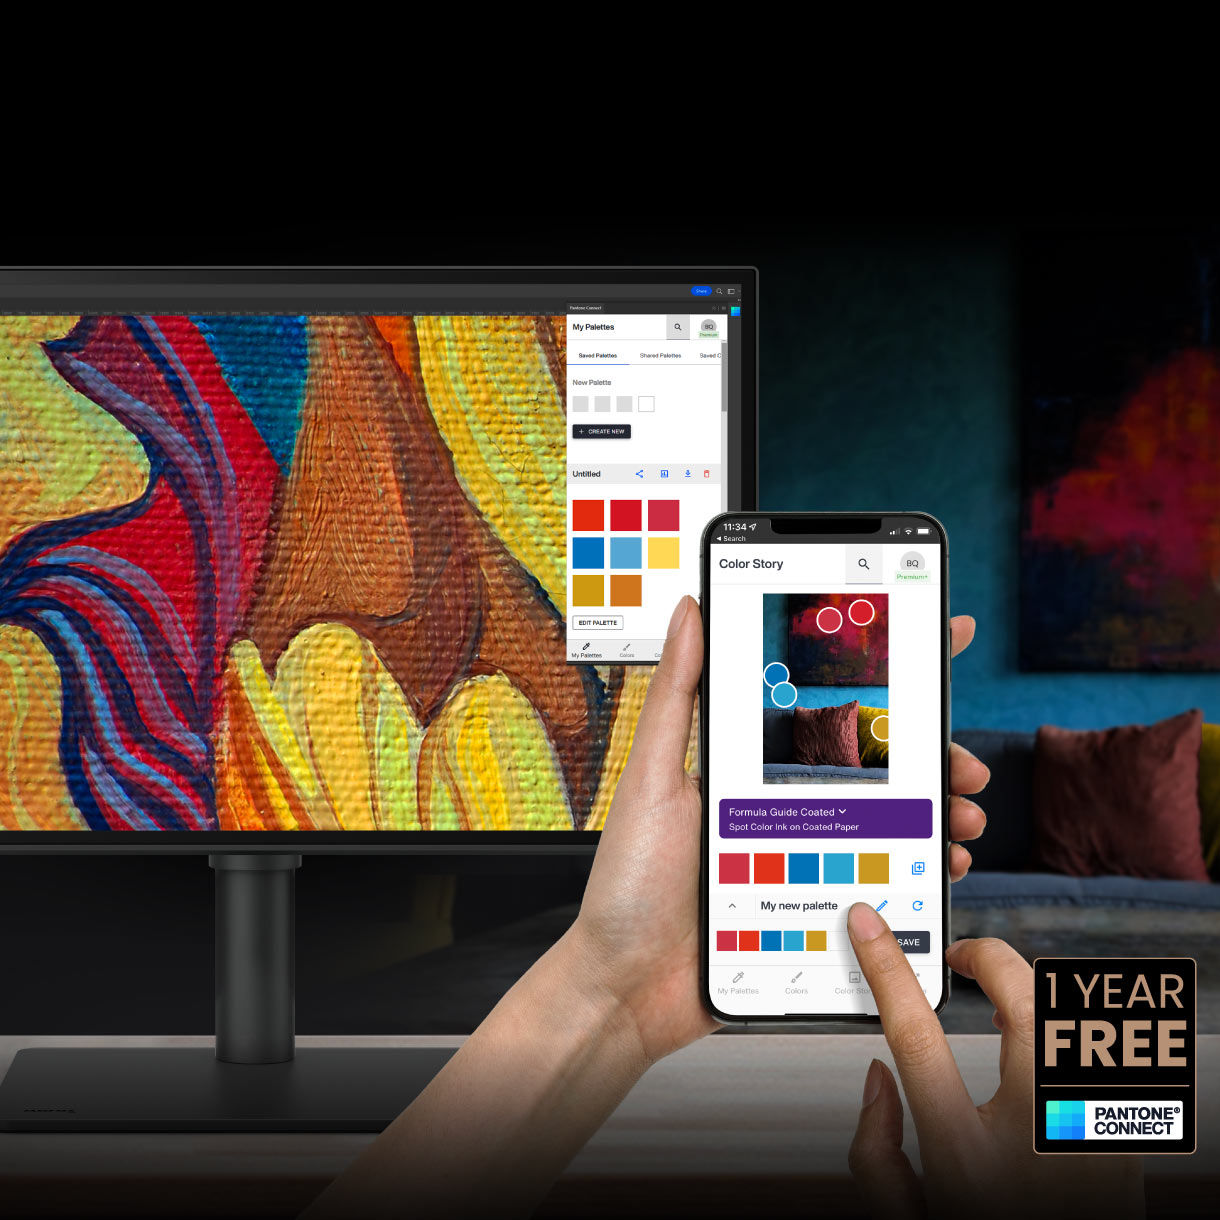 Als bestaande eigenaar of nieuwe koper van BenQ professionele monitors krijg je één jaar gratis Pantone Connect Premium voor digitaal mobiele kleurconsistentie en accuraatheid.